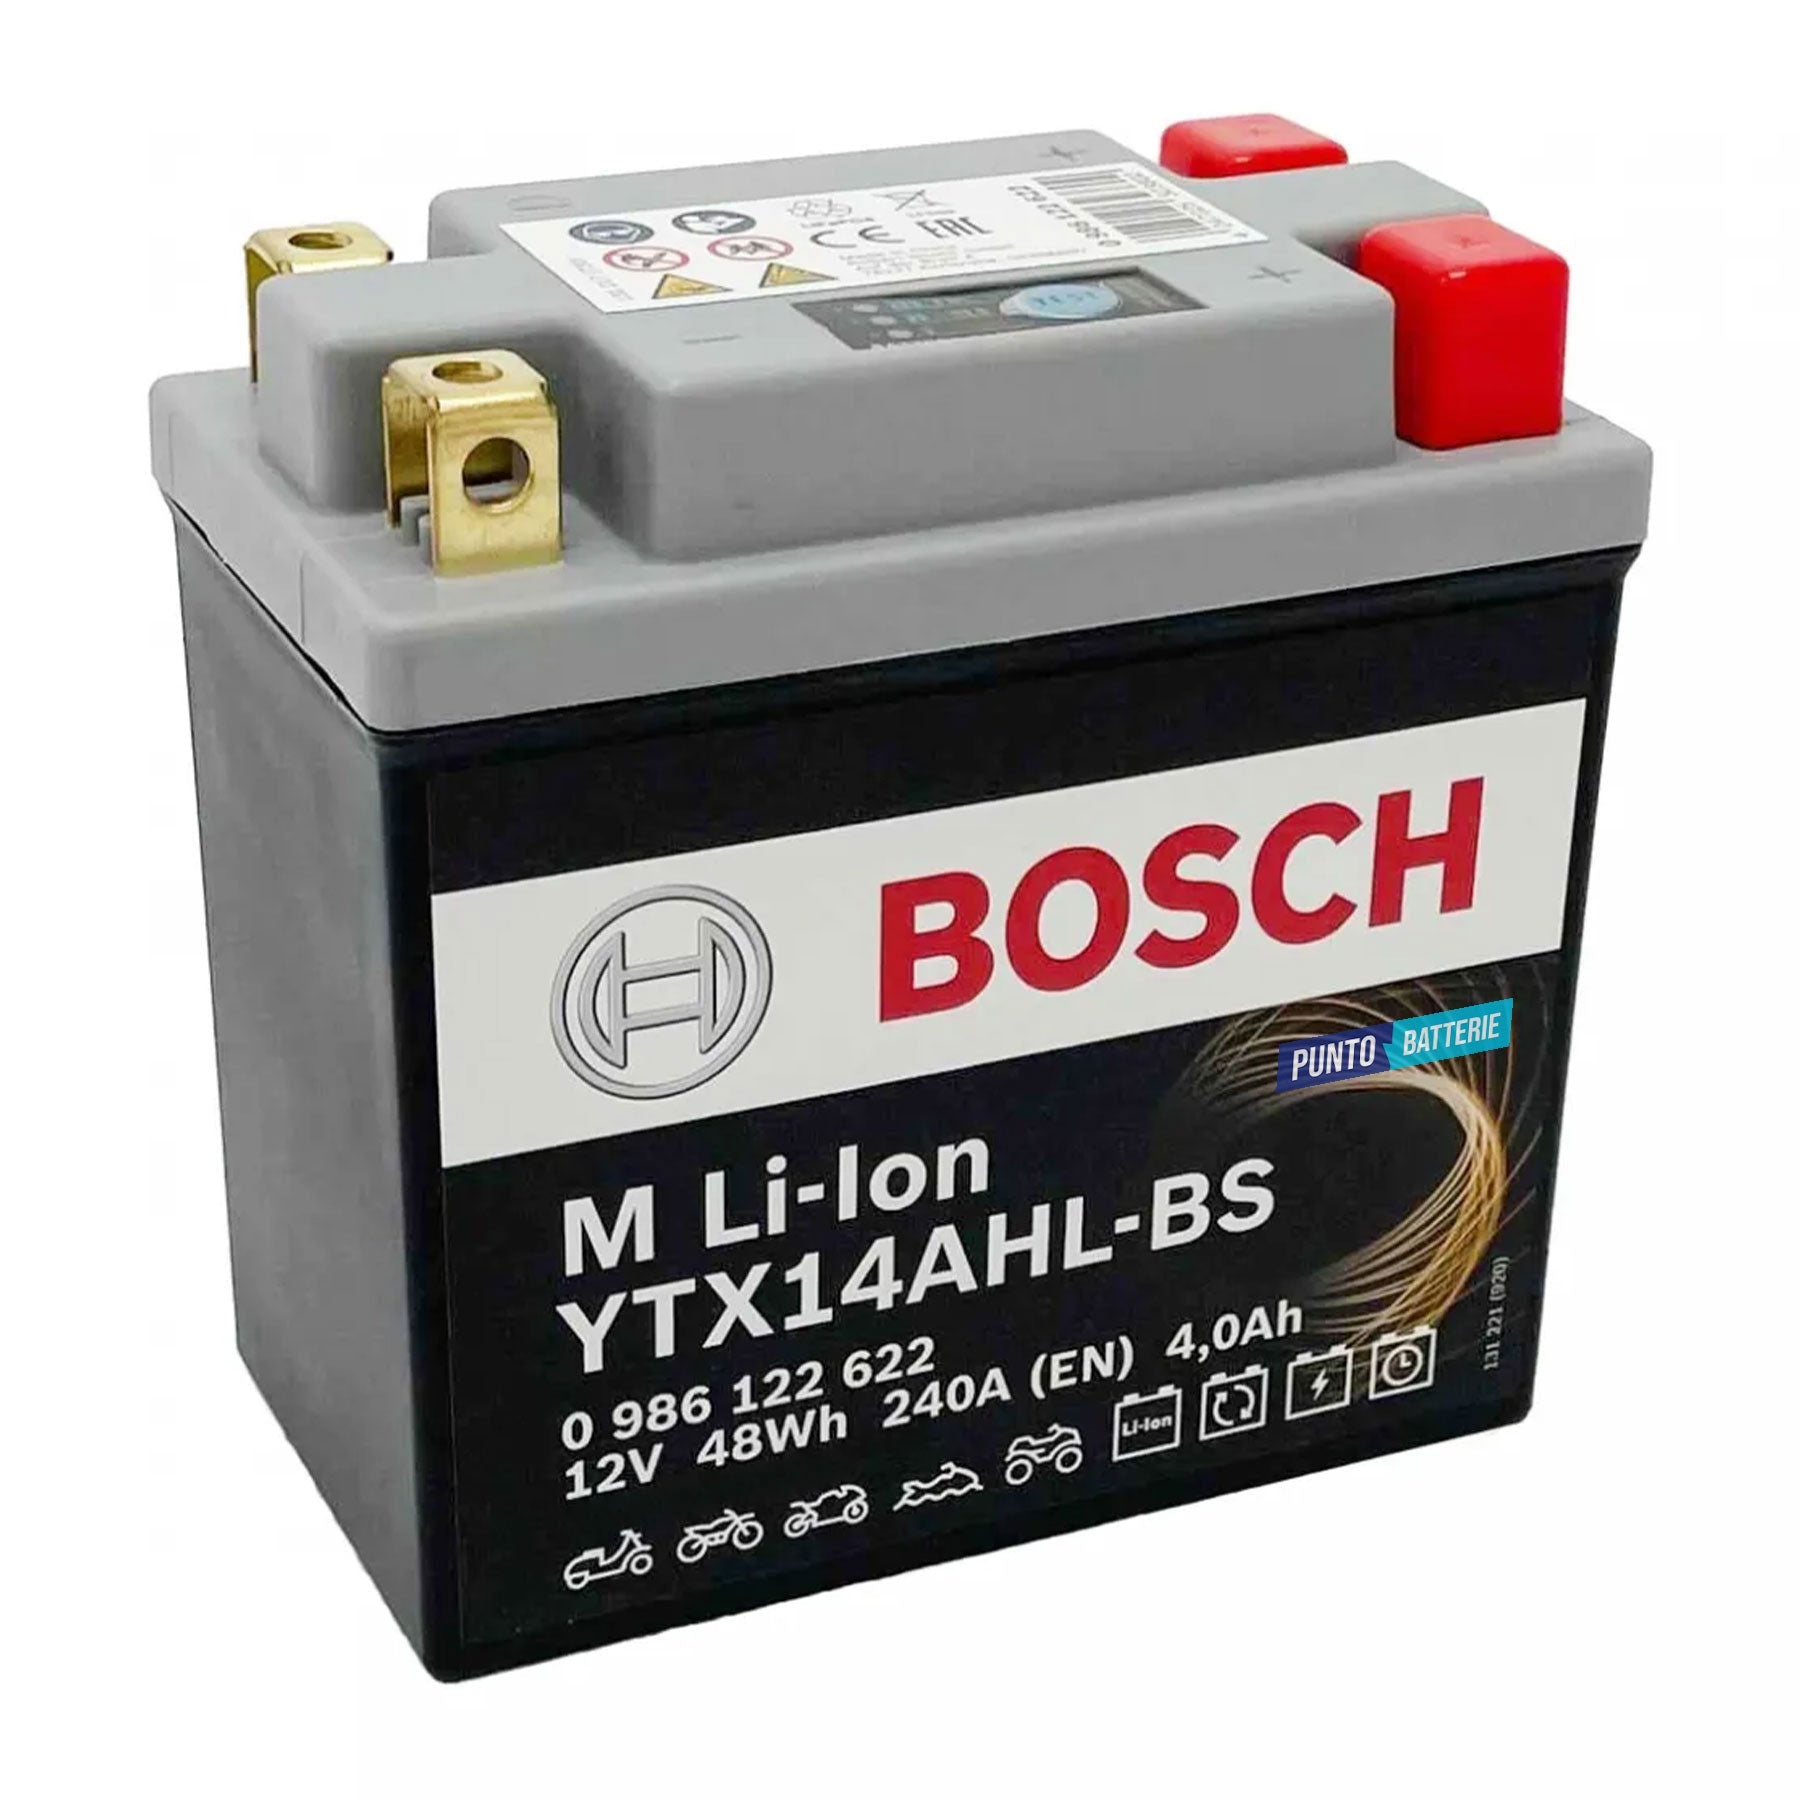 Batteria originale Bosch M Li-ion LTX14AHL-BS, dimensioni 134 x 75 x 168, polo positivo a destra e sinistra, 12 volt, 4 amperora, 240 ampere. Batteria per moto, scooter e powersport.